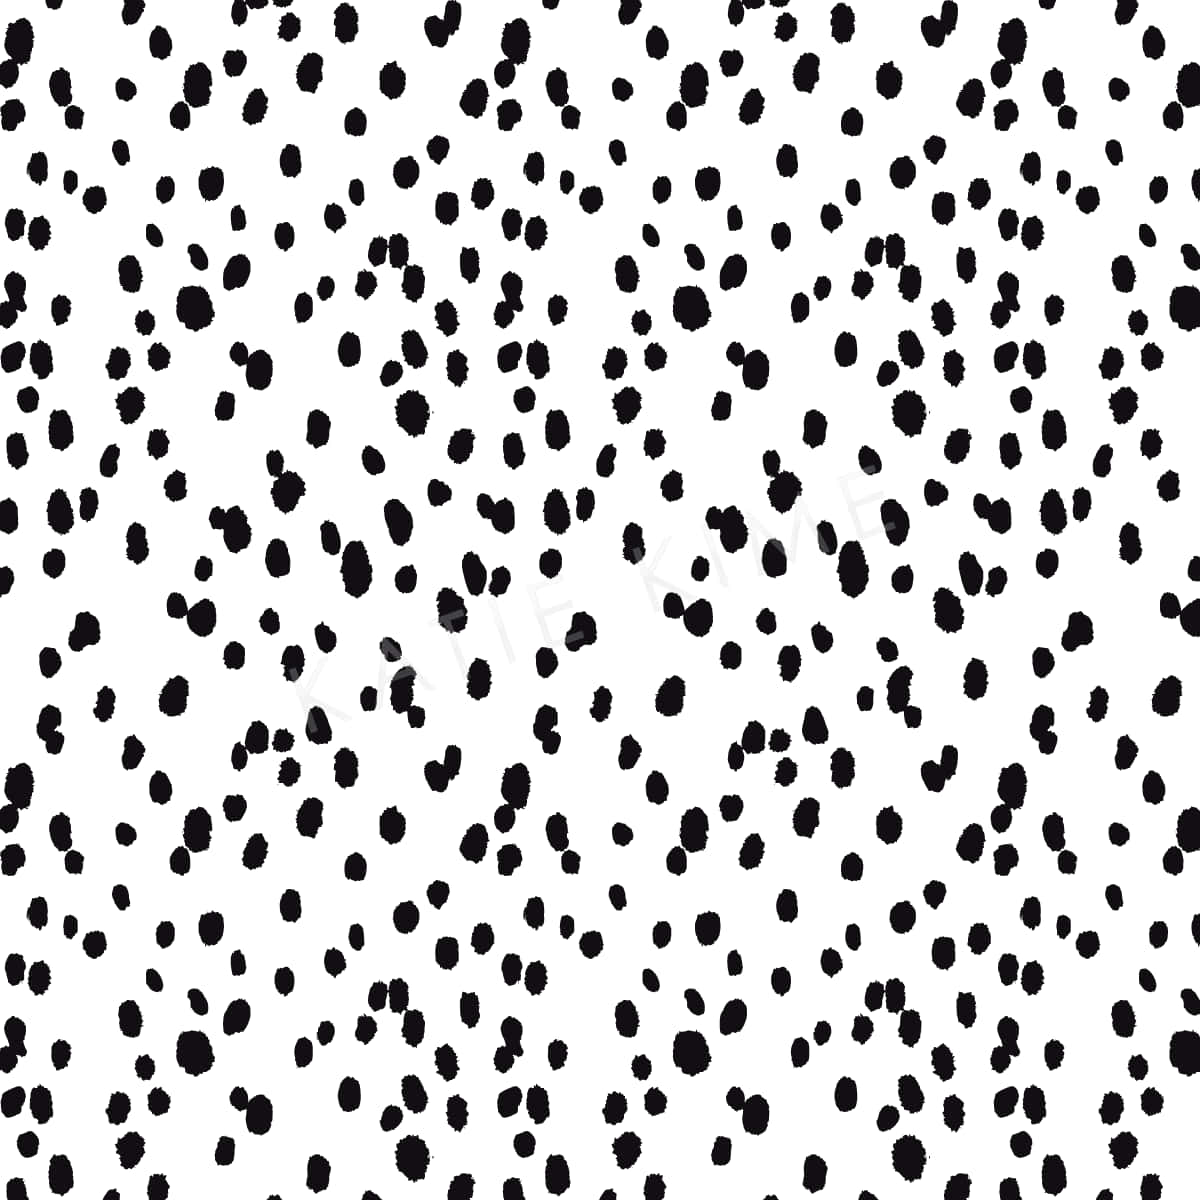 Black Dots wallpaper Wallpaper